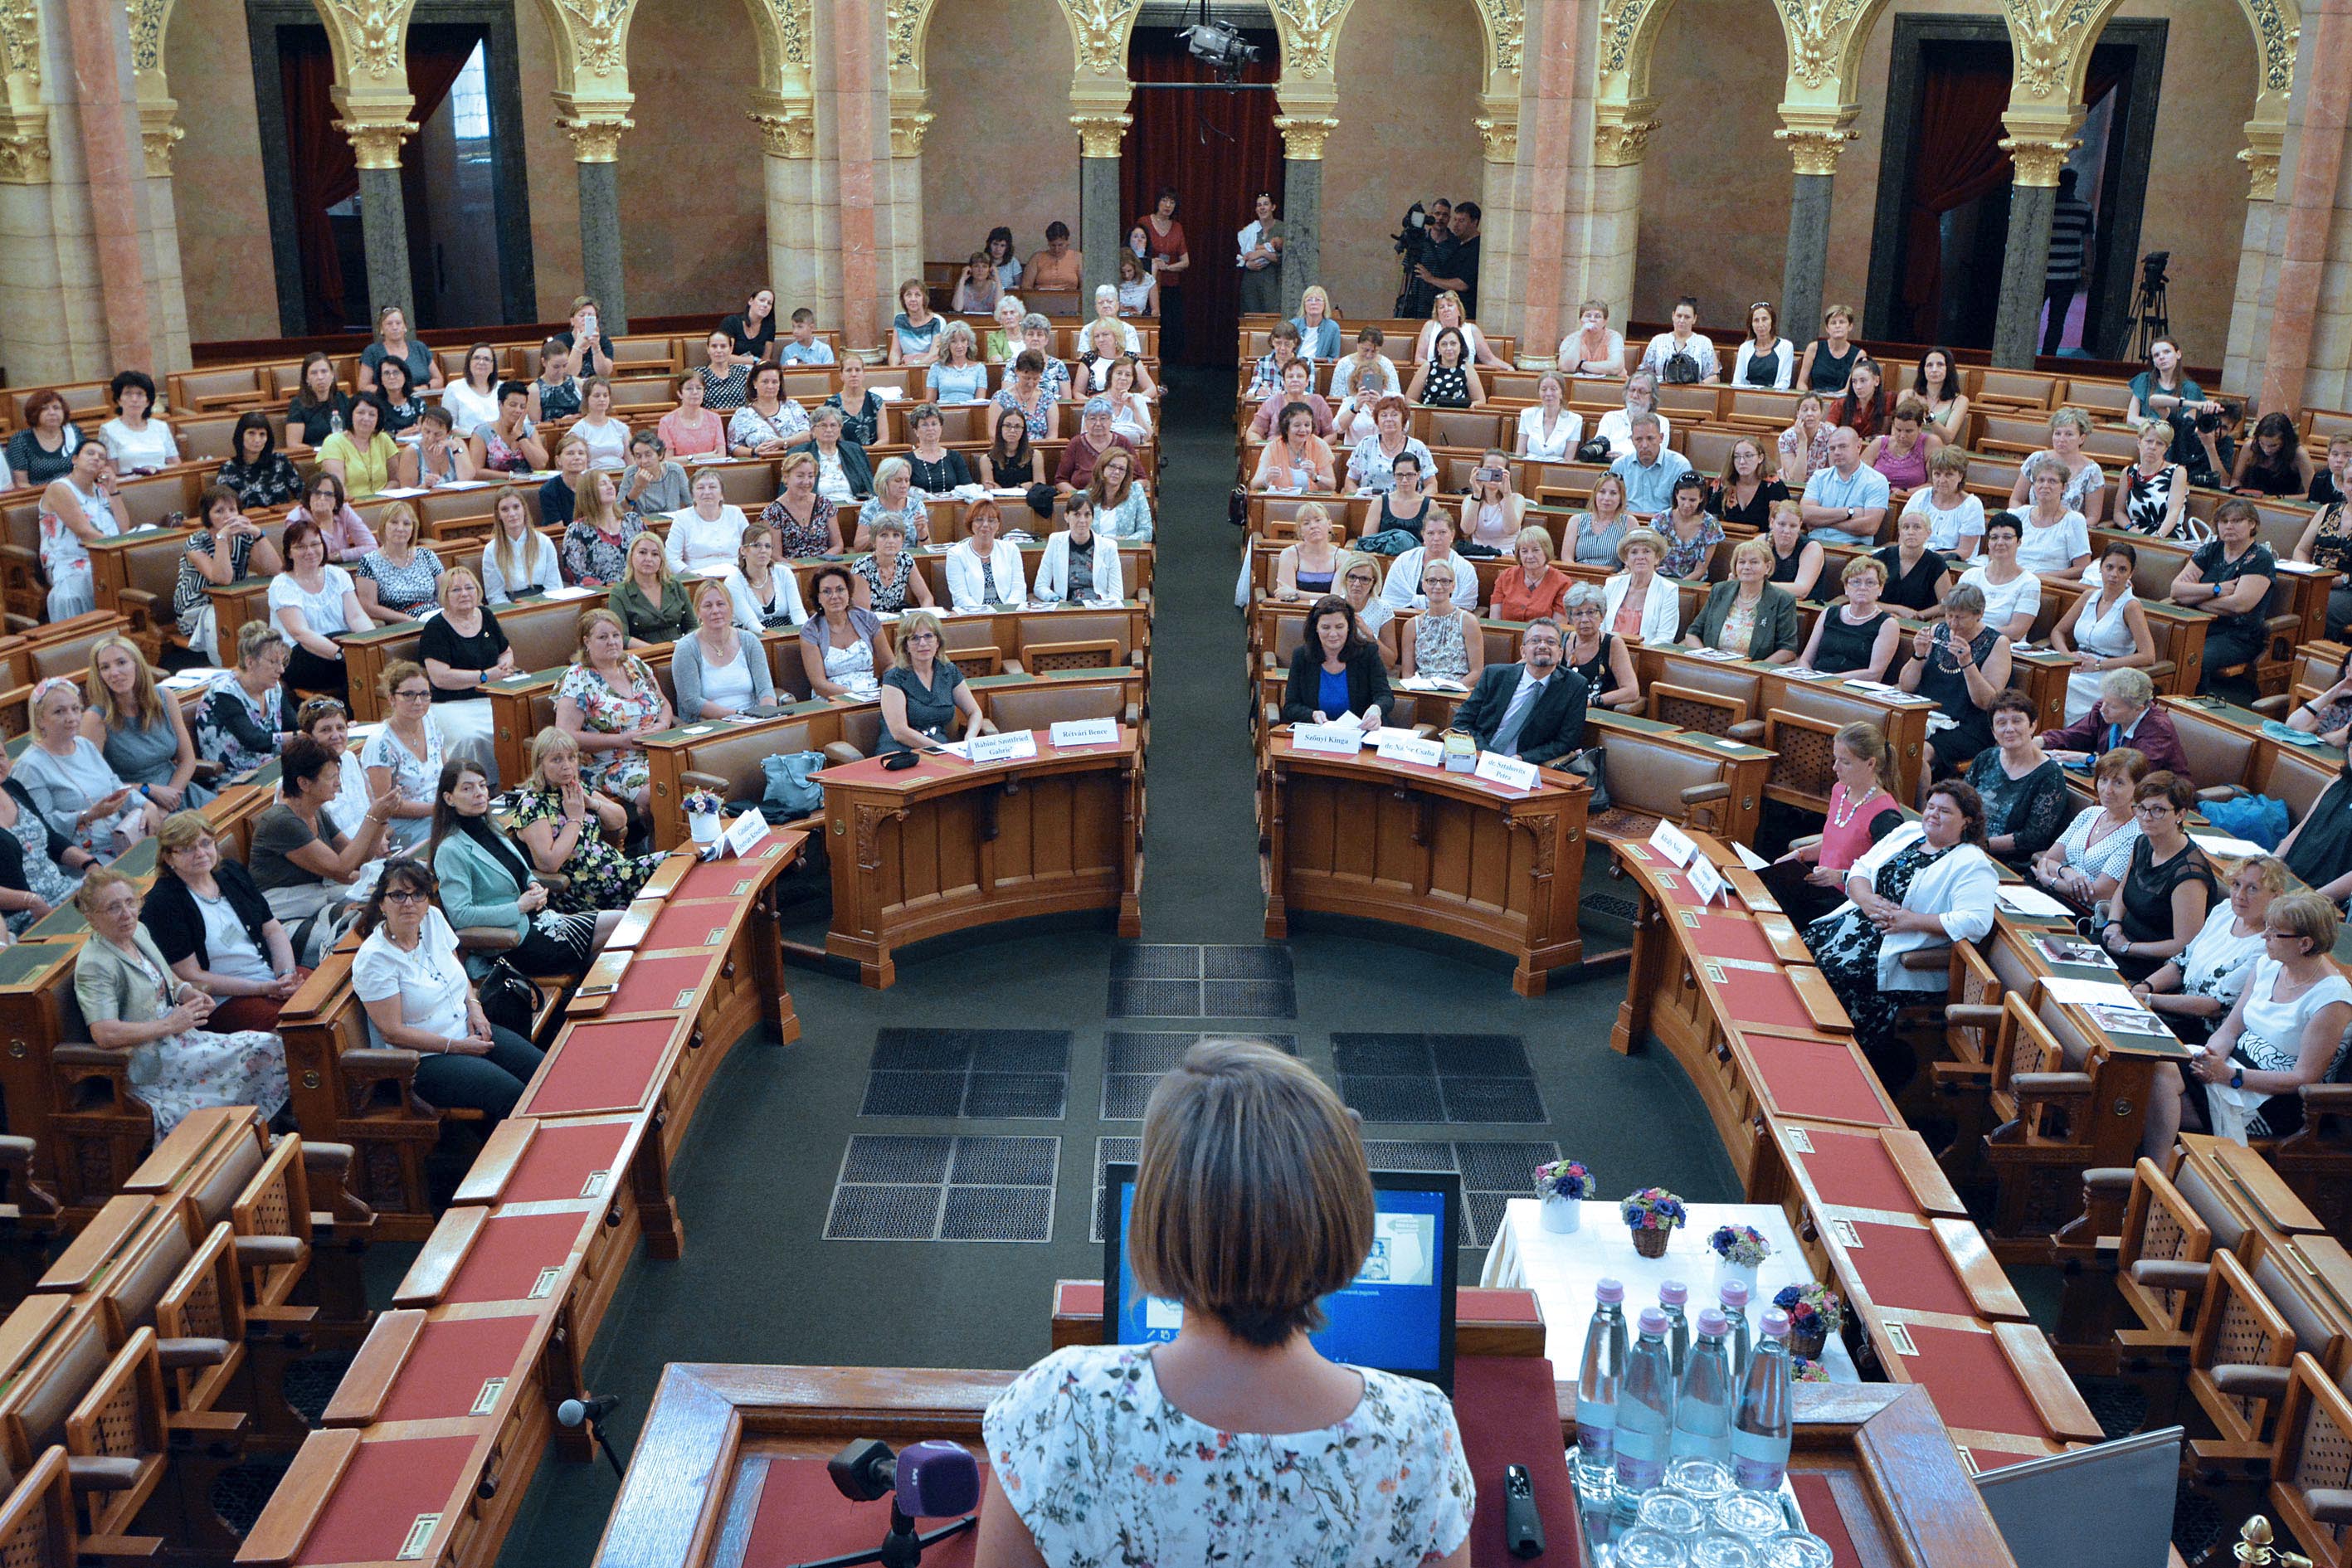 Az anyatejes táplálás világnapja alkalmából rendezett konferencia (Budapest, 2019.08.01. KDNP fotó: Váli MIklós)